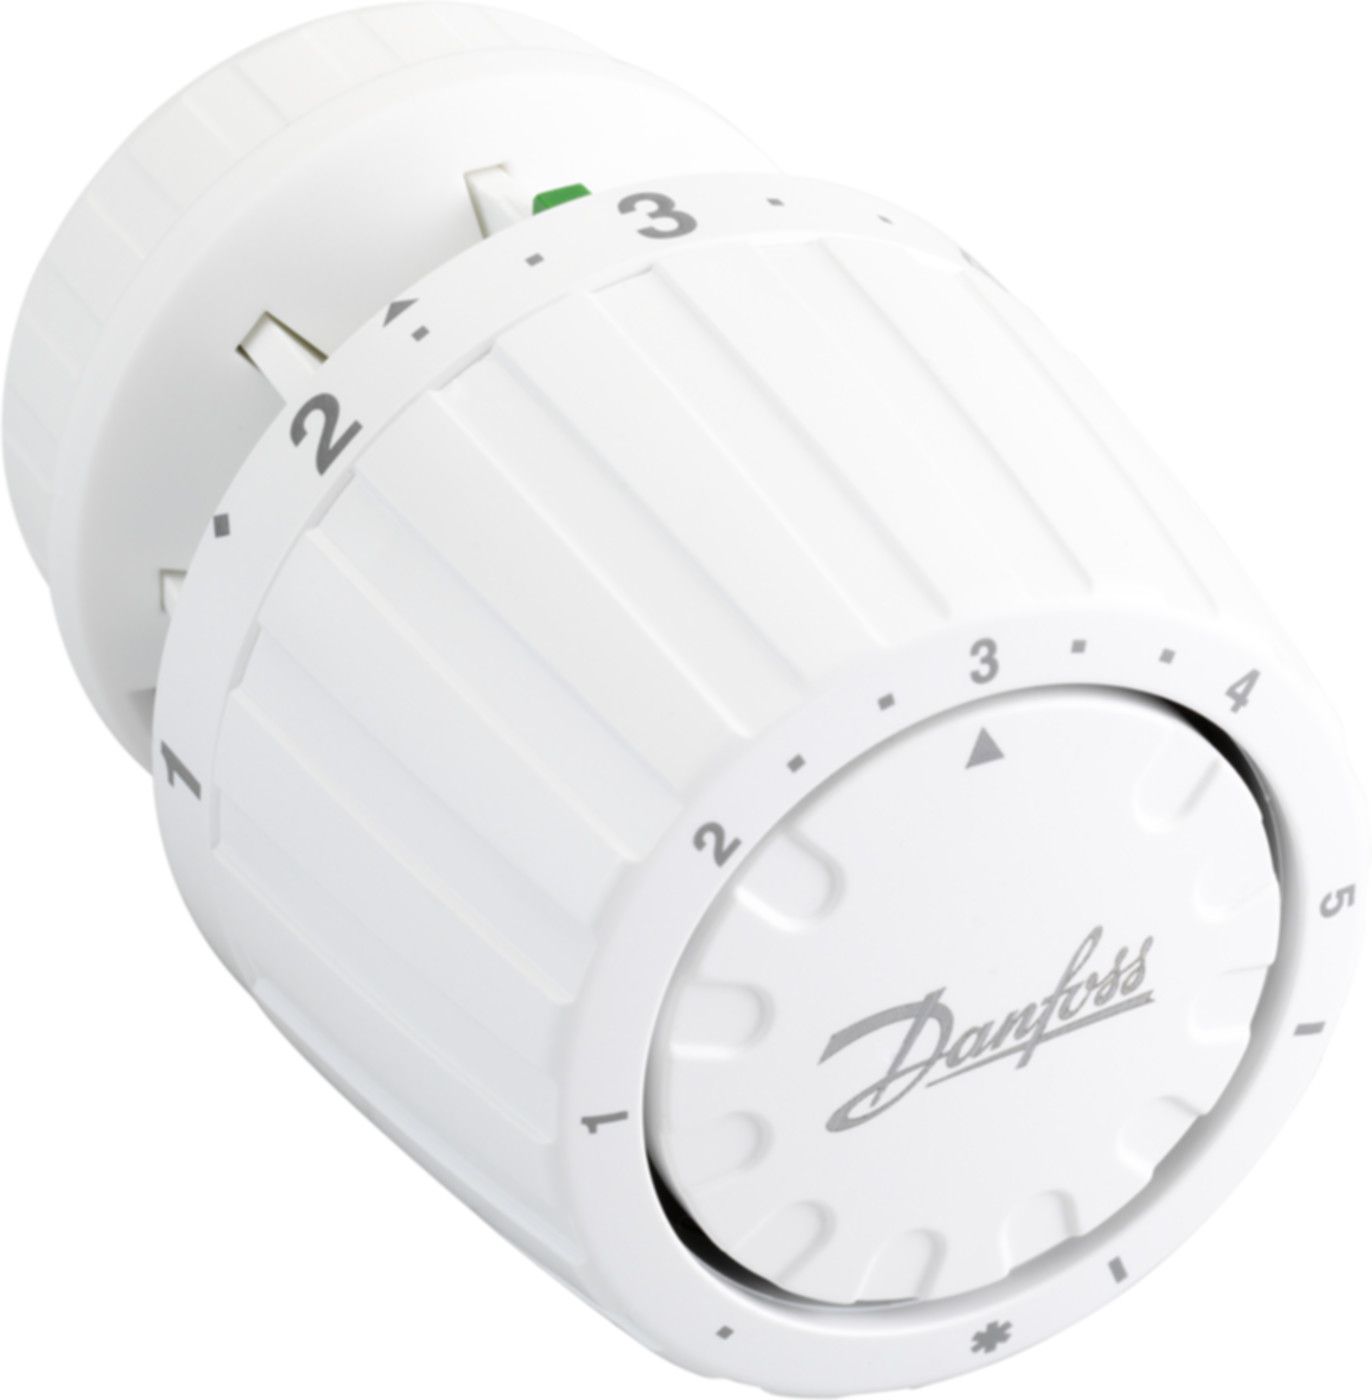 Thermostatfühler Fühler eingeb. RA 2990 5-26°C 013G2990 (wird ersetzt) - Danfoss Programm